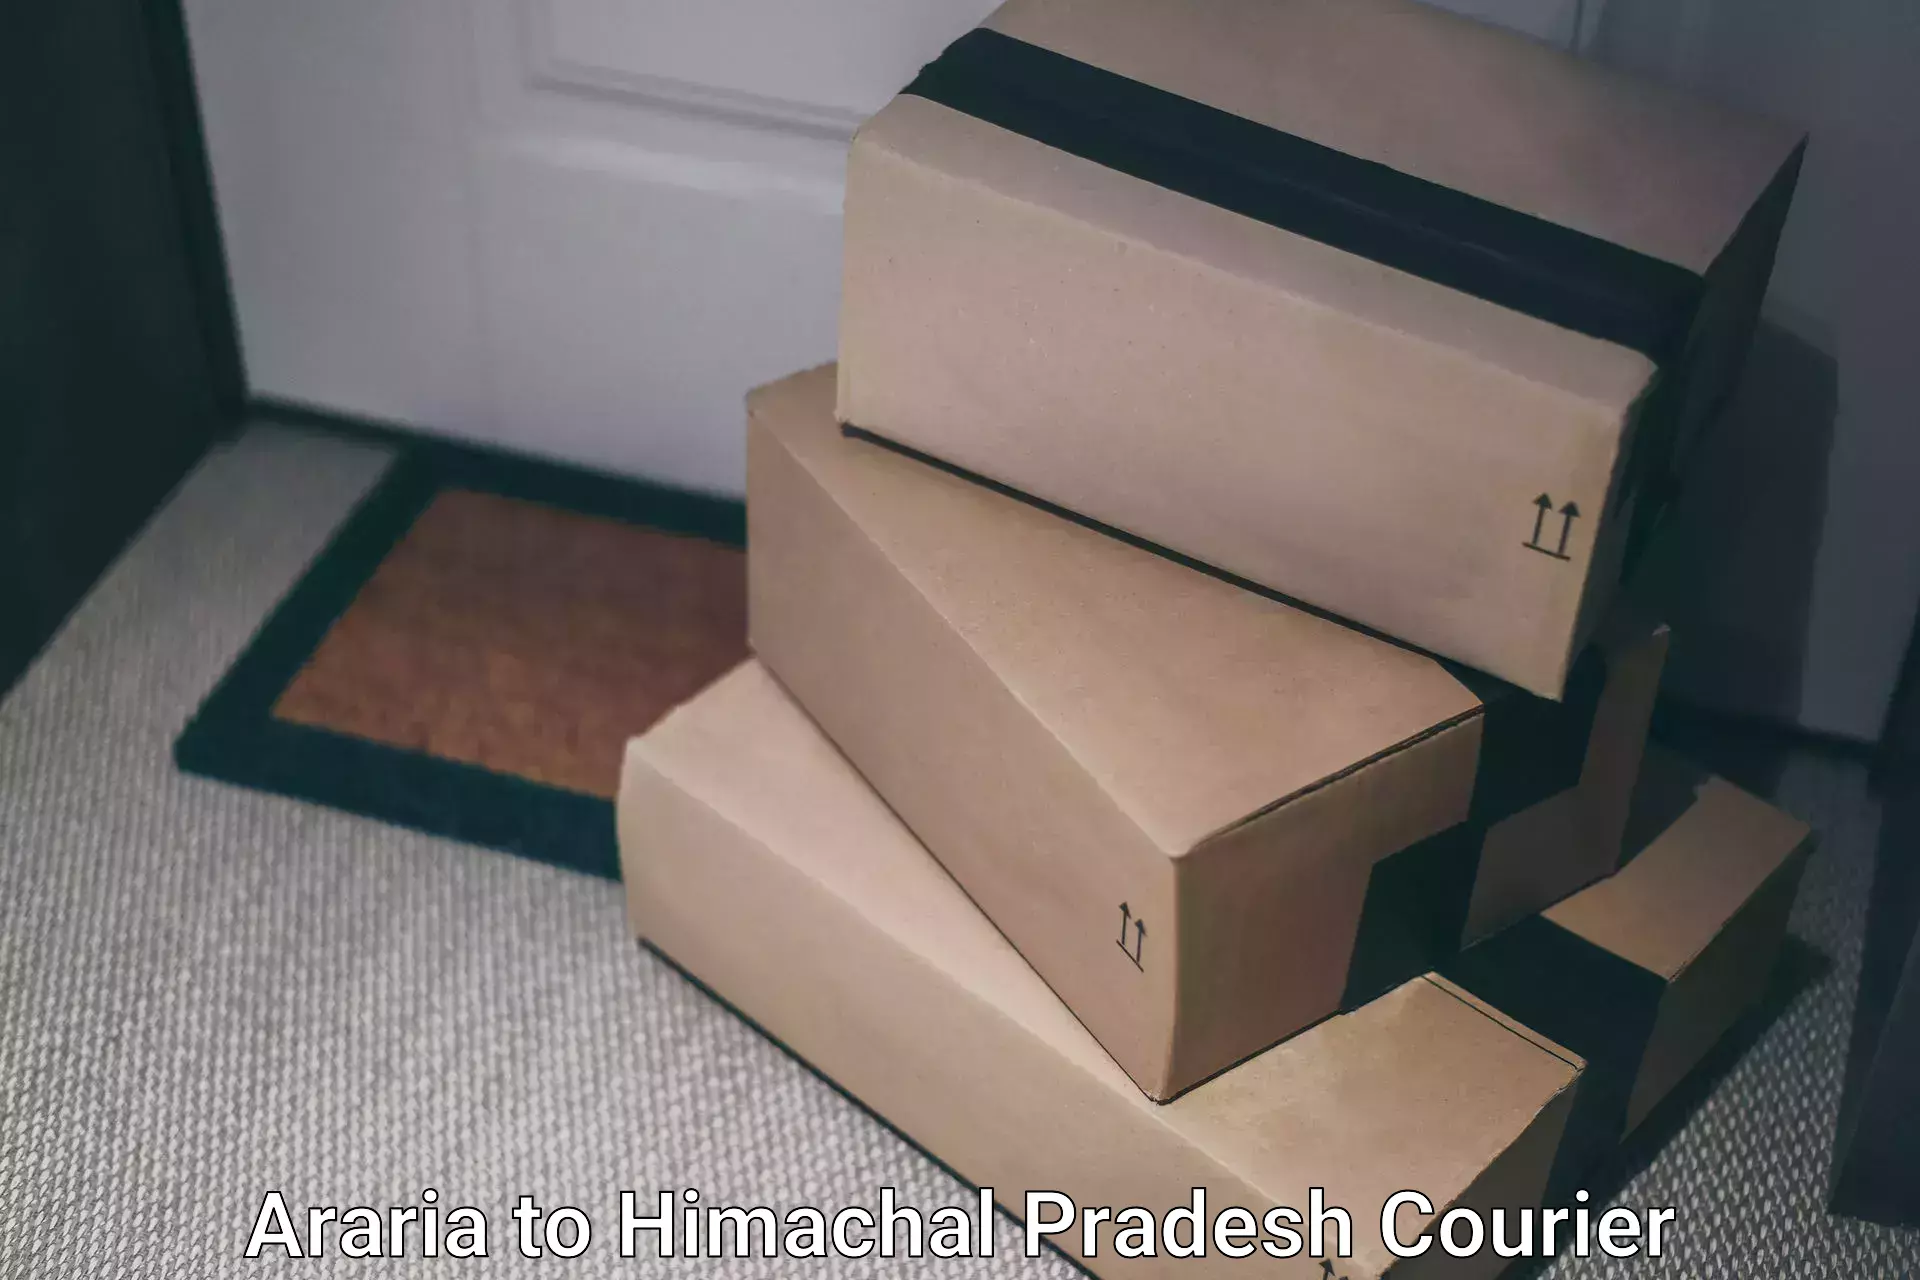 Global parcel delivery Araria to Joginder Nagar